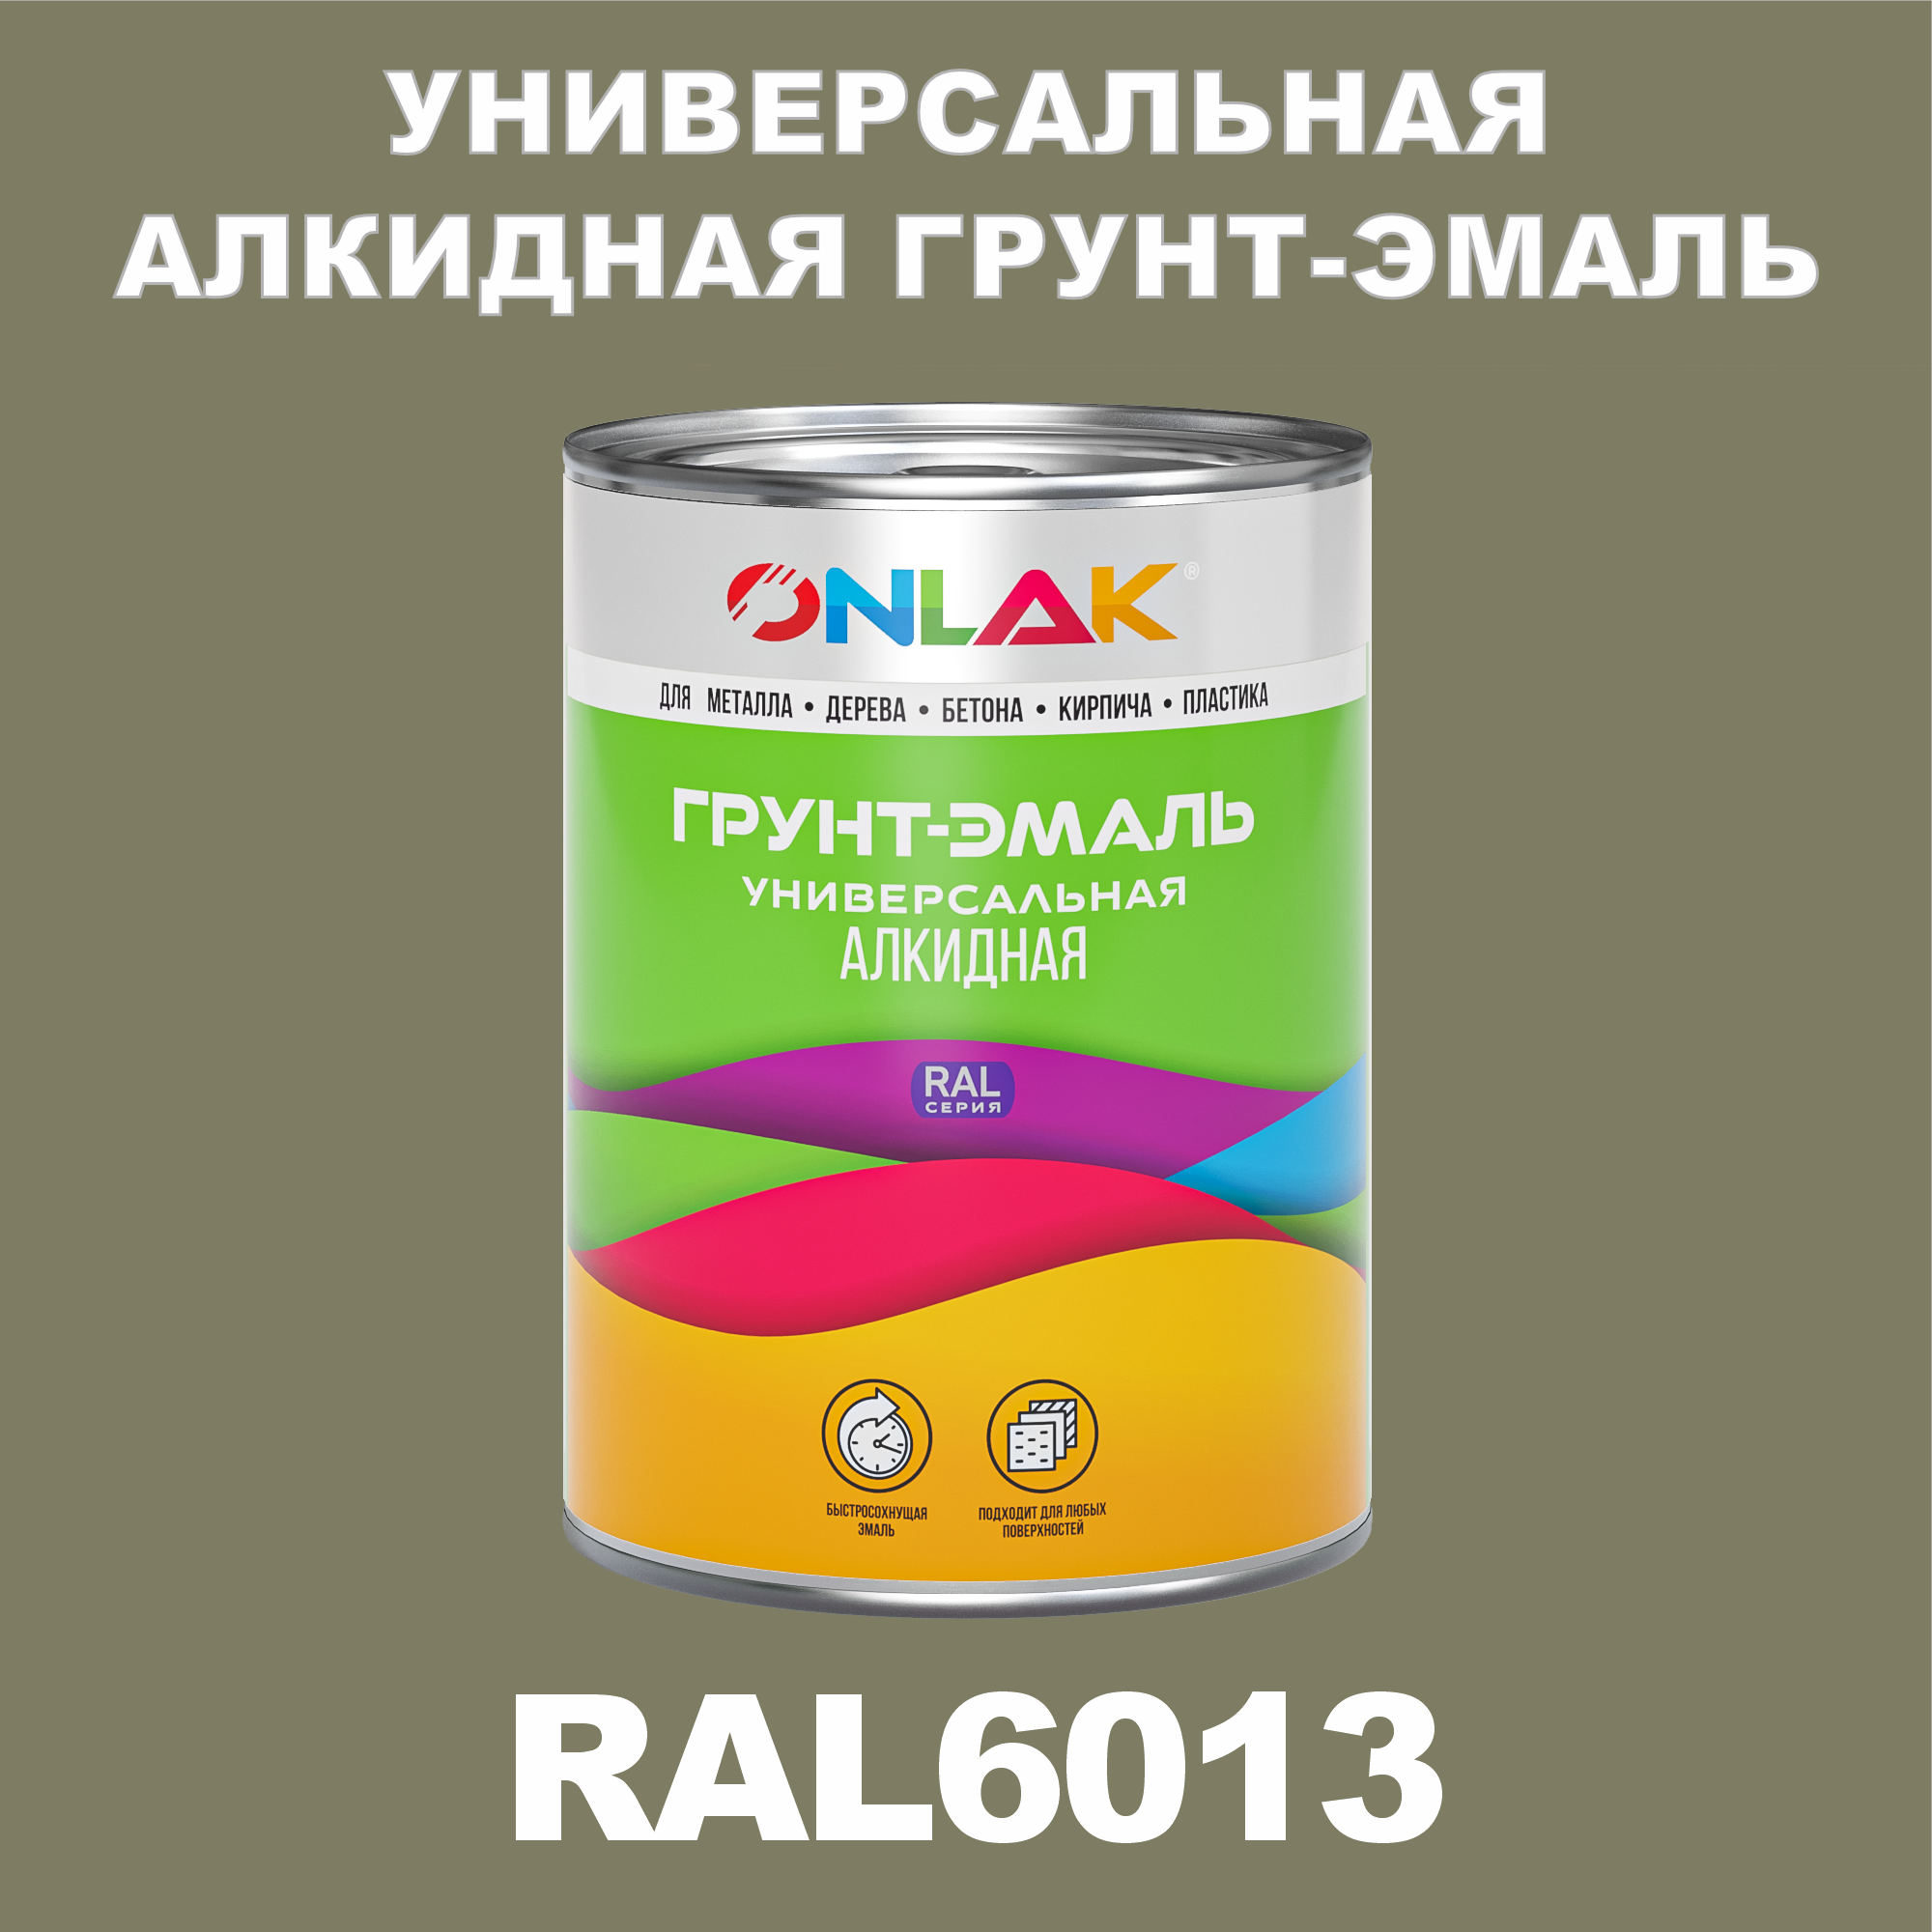 Грунт-эмаль ONLAK 1К RAL6013 антикоррозионная алкидная по металлу по ржавчине 1 кг грунт эмаль аэрозольная престиж 3в1 алкидная коричневая ral 8017 425 мл 0 425 кг